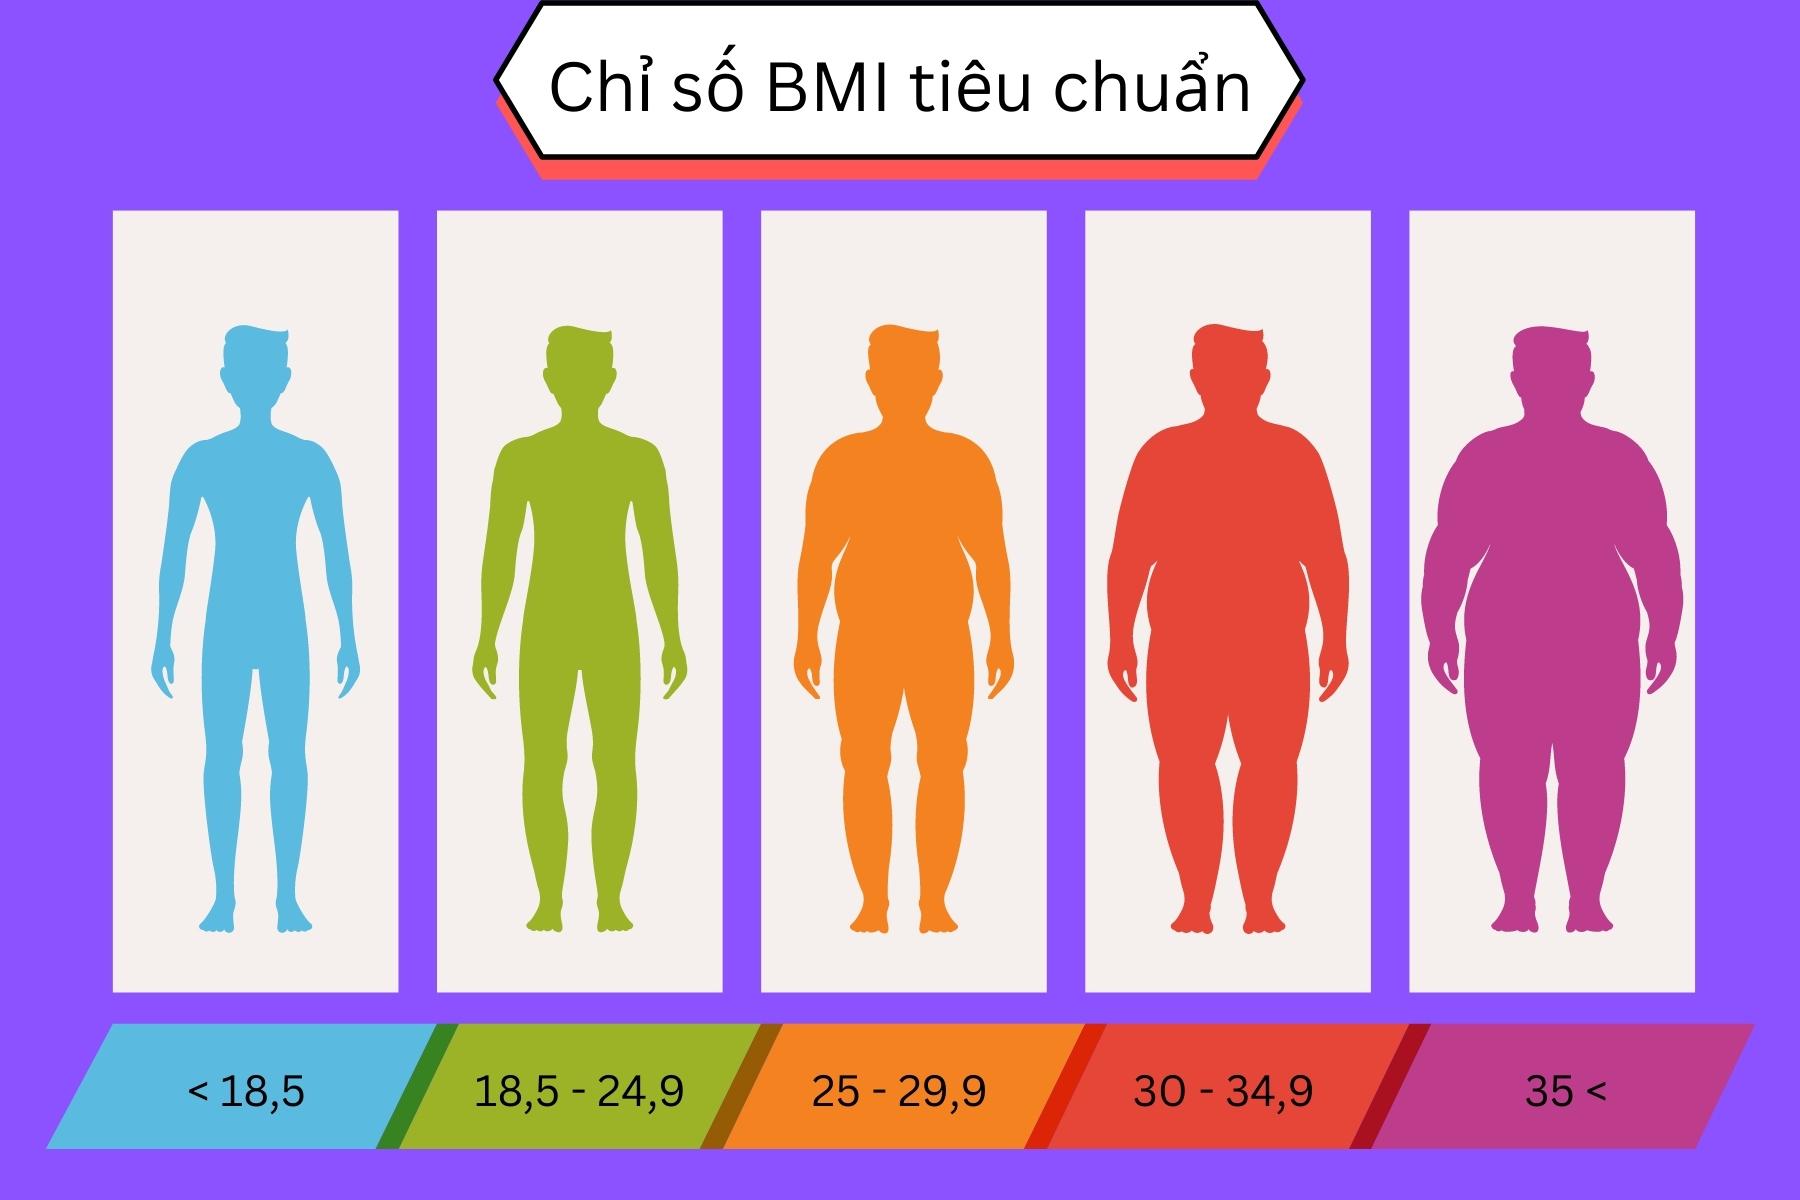 Chi so BMI tieu chuan